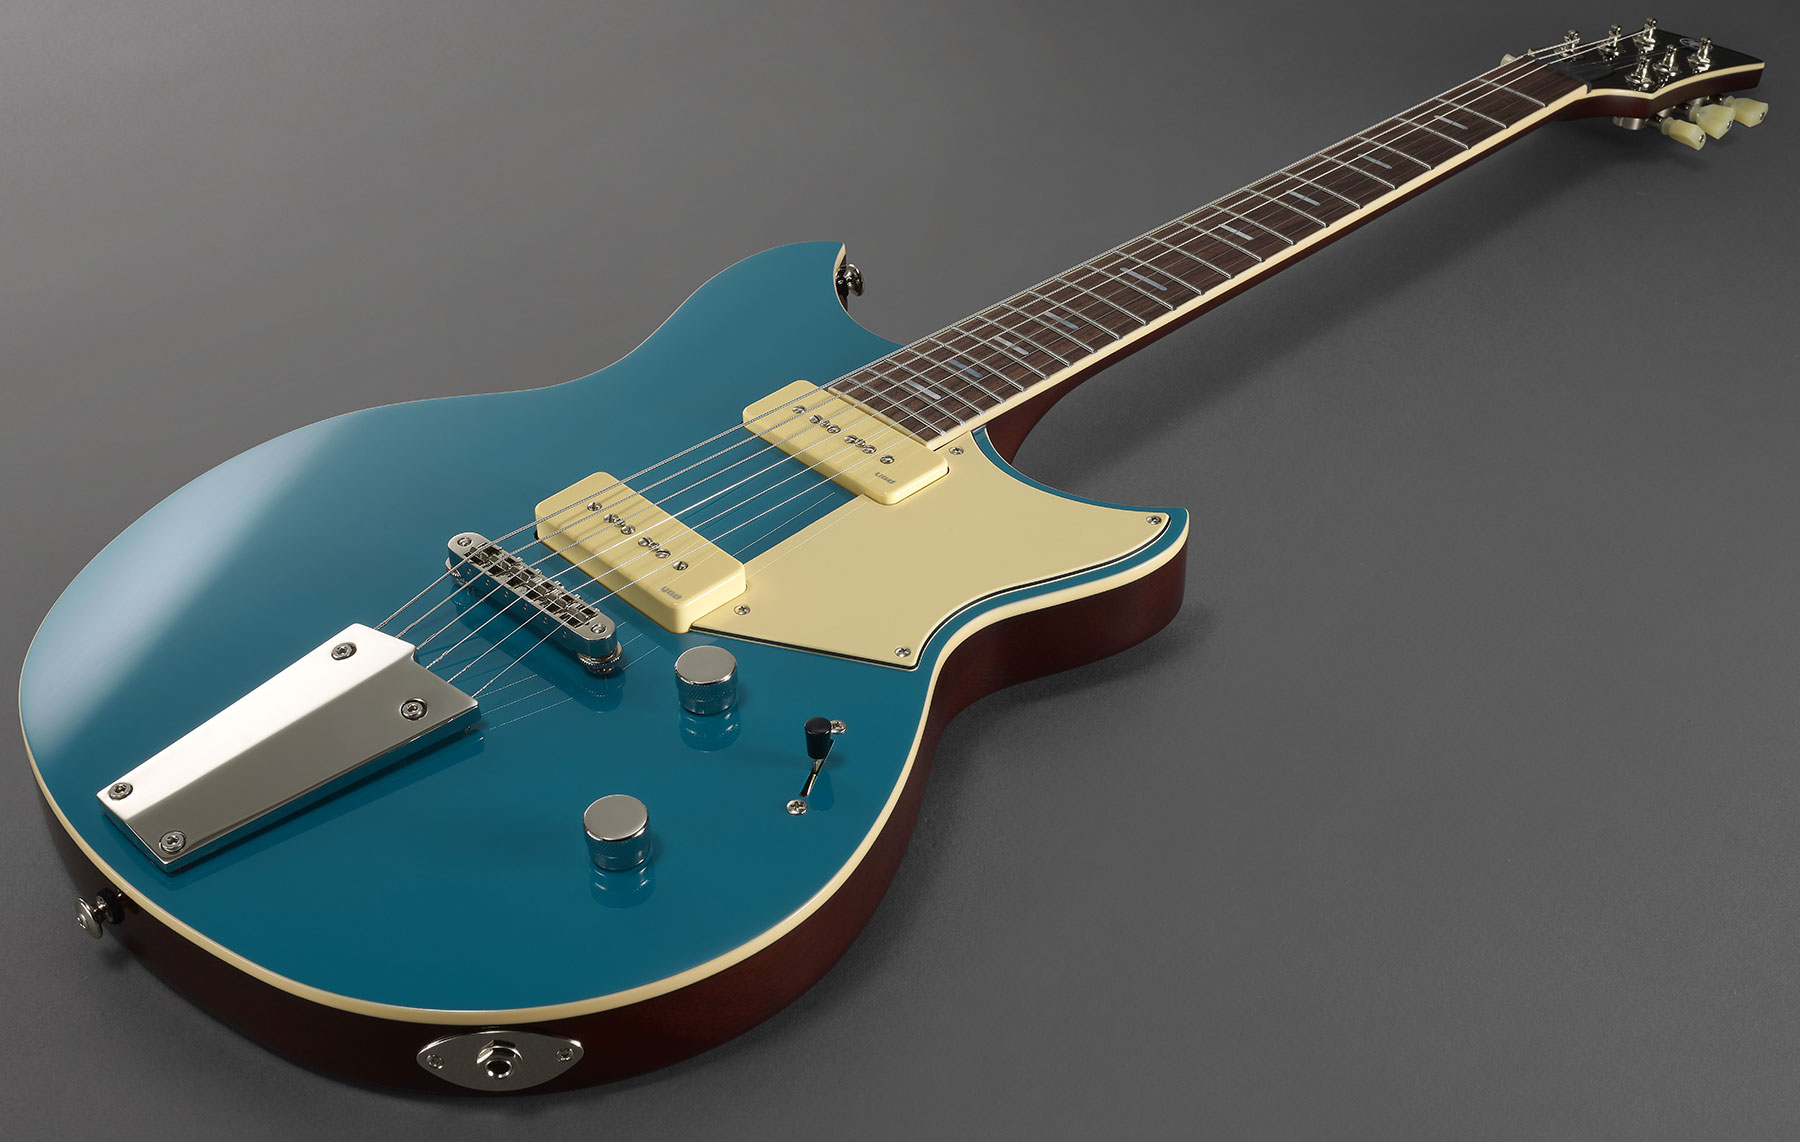 Yamaha Rsp02t Revstar Professionnal Jap 2p90 Ht Rw - Swift Blue - Guitarra eléctrica de doble corte - Variation 3